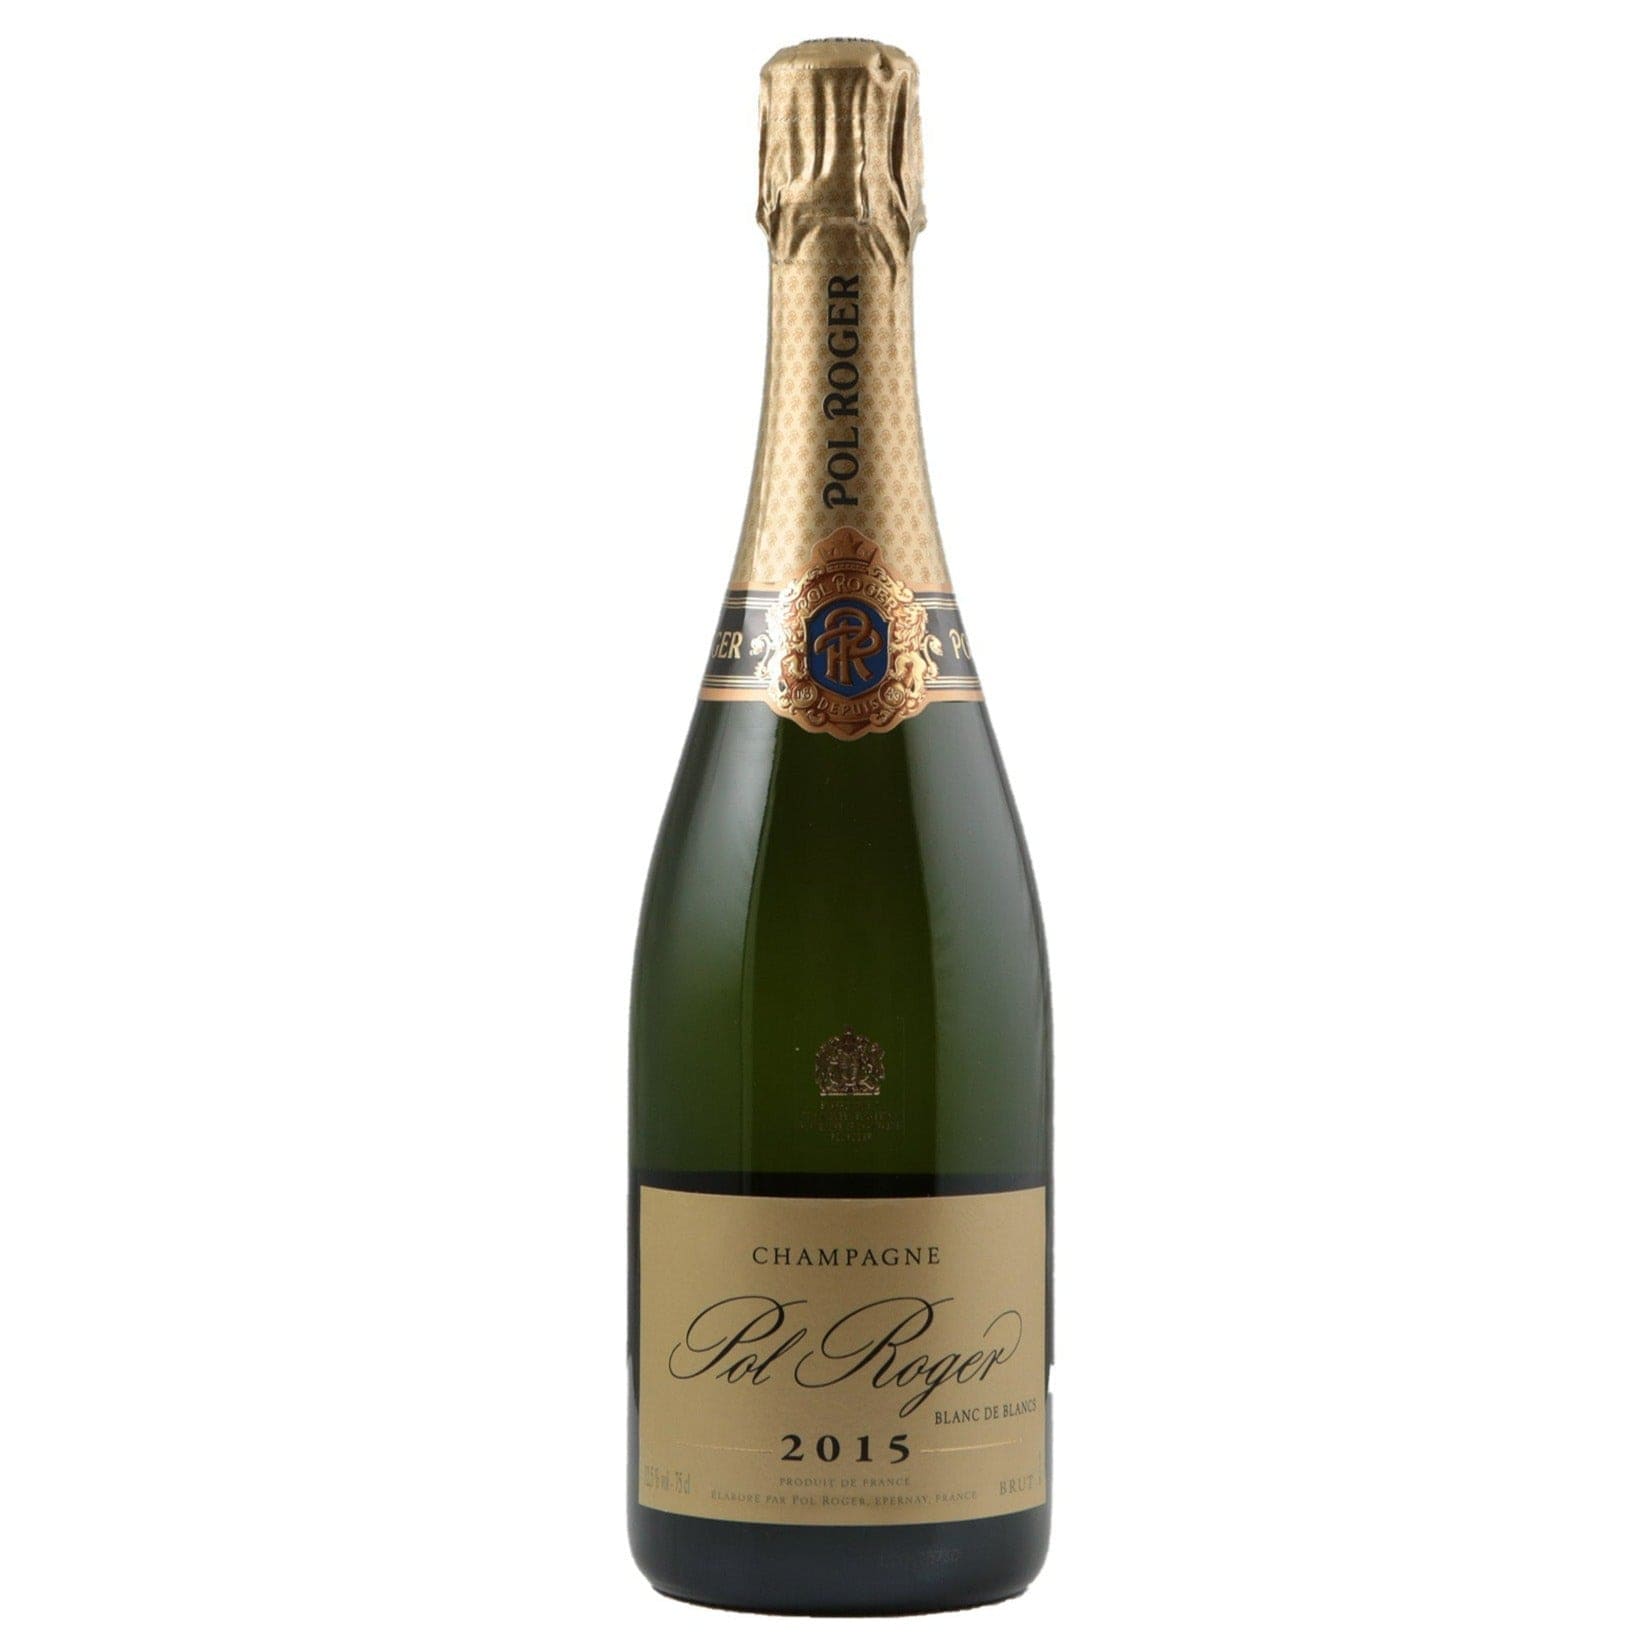 Single bottle of Sparkling wine Pol Roger, Blanc de Blancs Brut, Champagne, 2015 100% Chardonnay